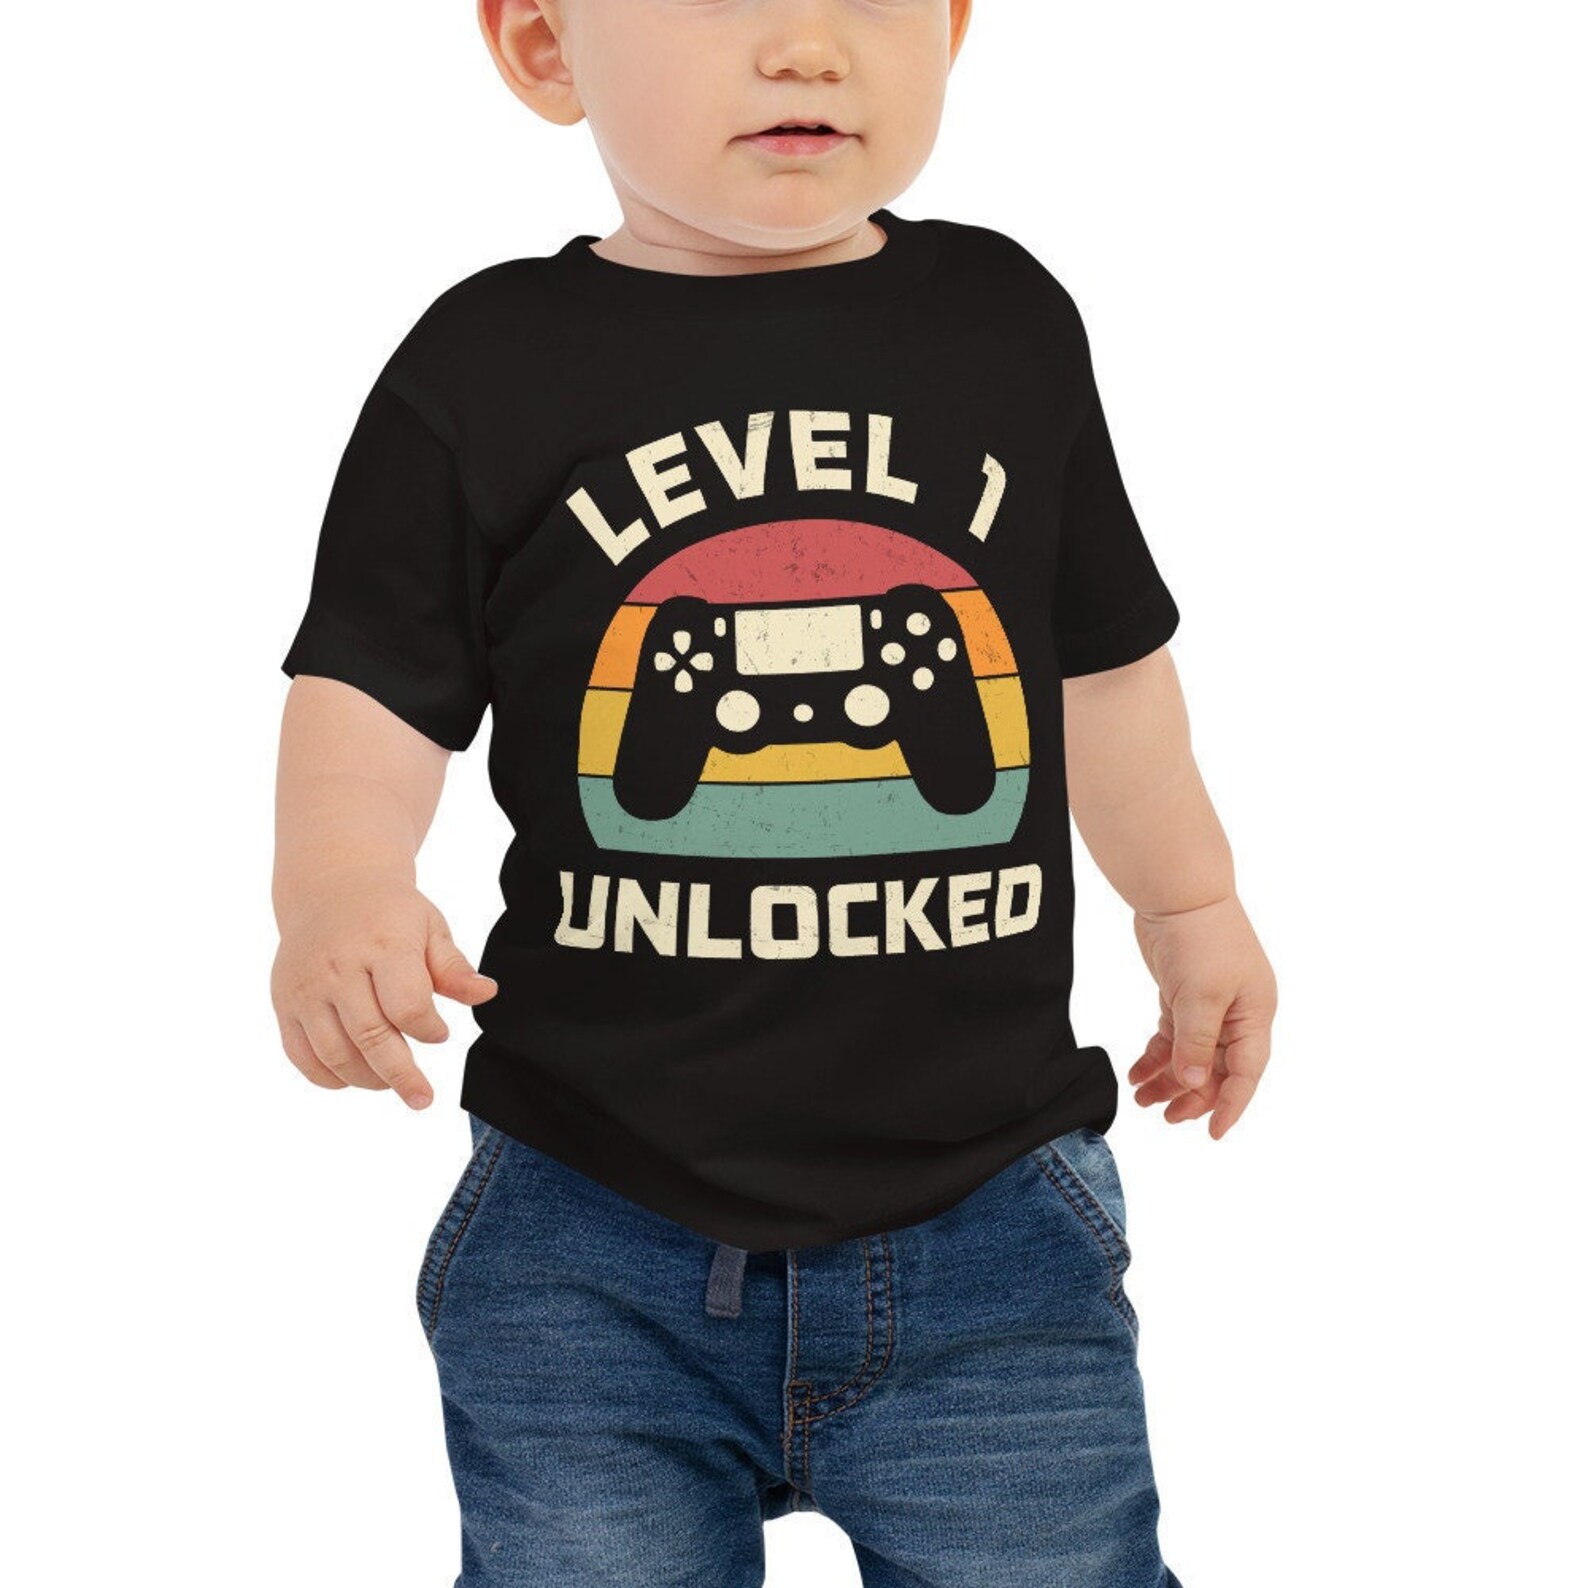 1st Birthday Shirt Level 1 Unlocked Gaming Shirt Video Game - Etsy